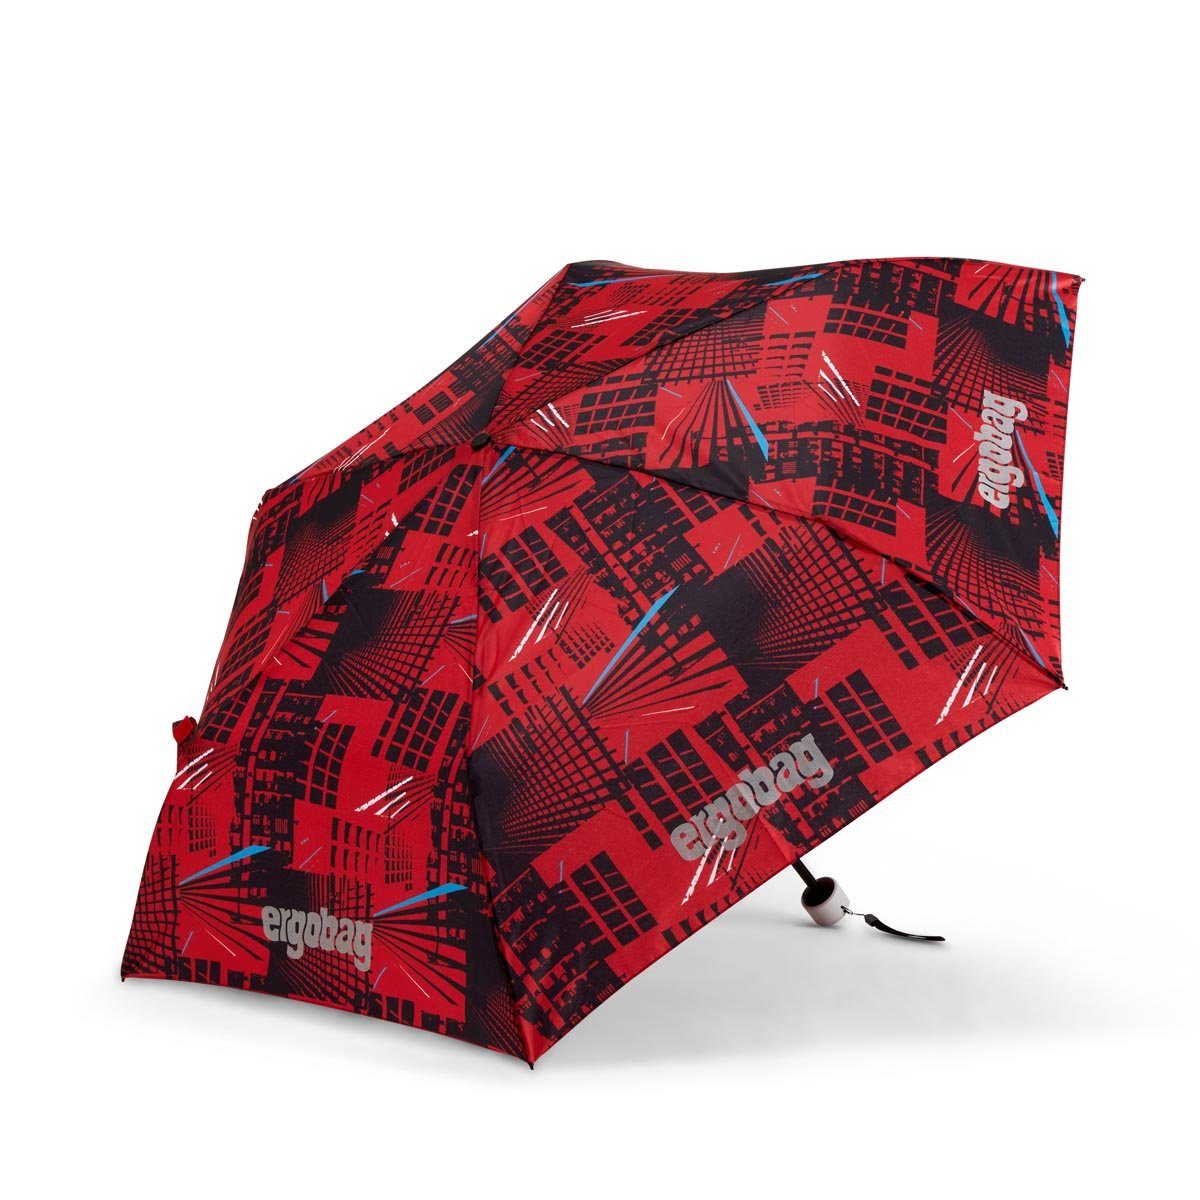 AlarmBärreitschaft Kinder-Regenschirm, Taschenregenschirm ergobag Refektierend